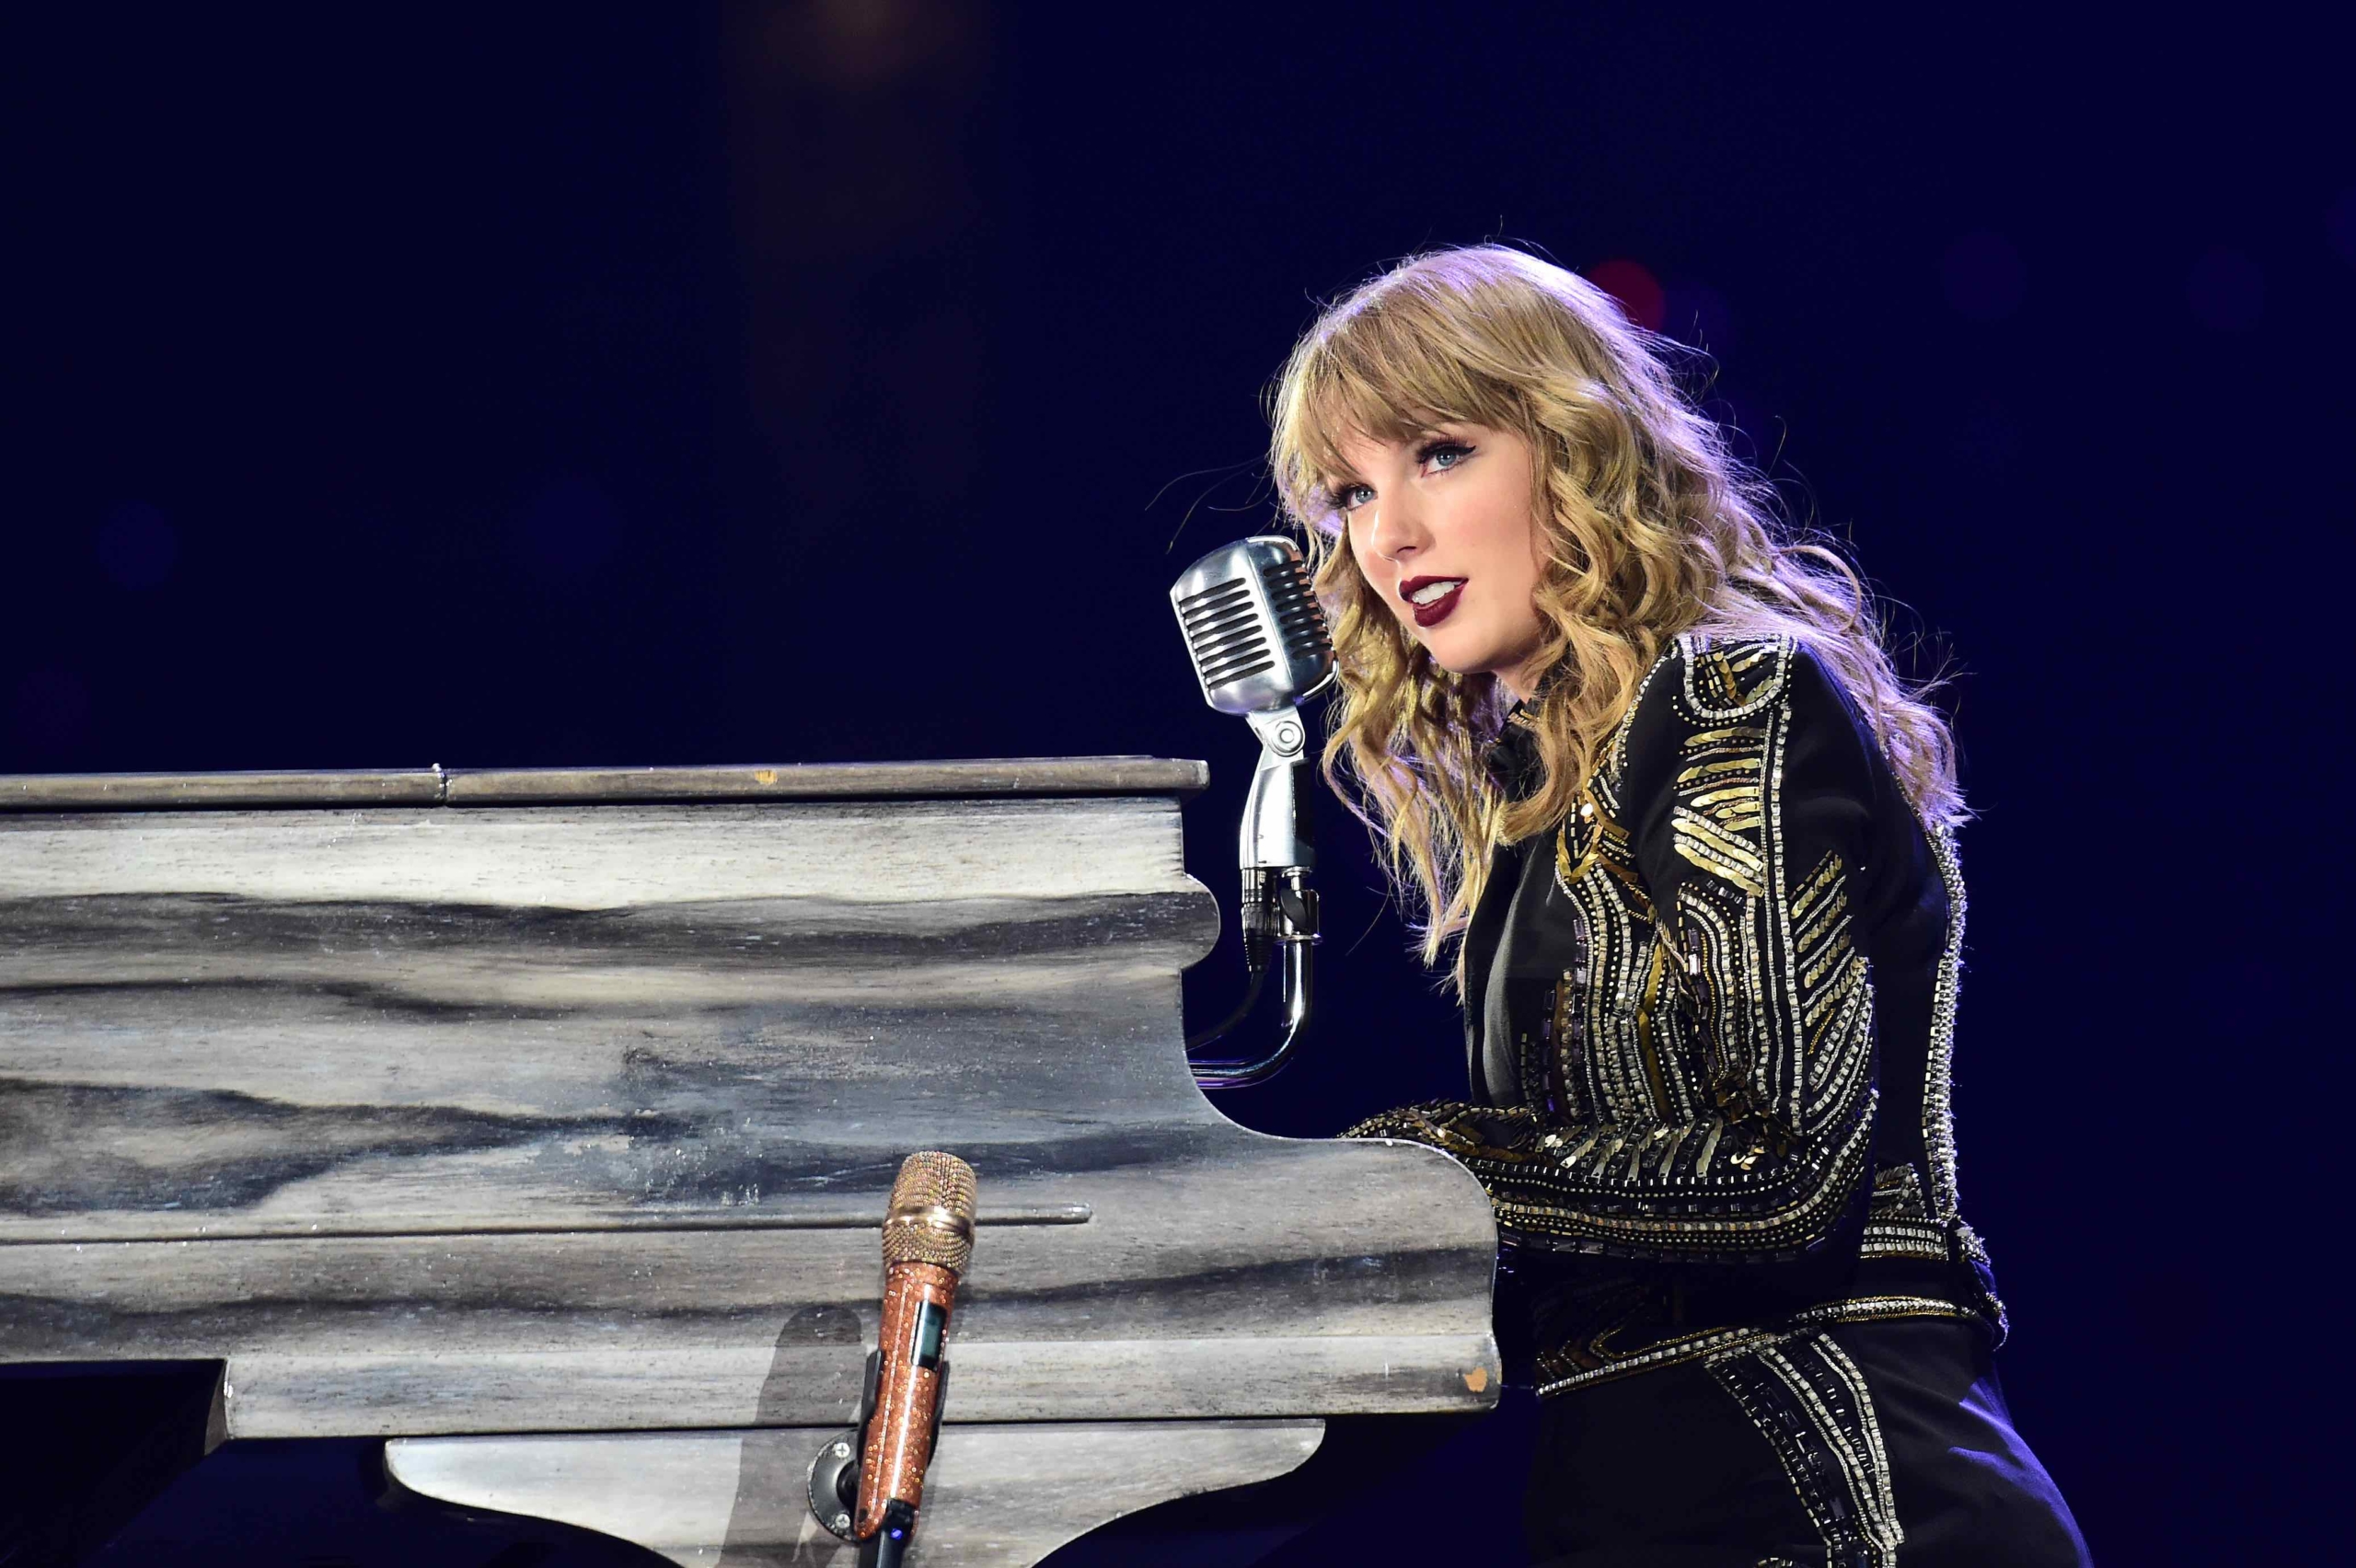 Rádió 1 Taylor Swift a country zene legnagyobb ünnepén zenél